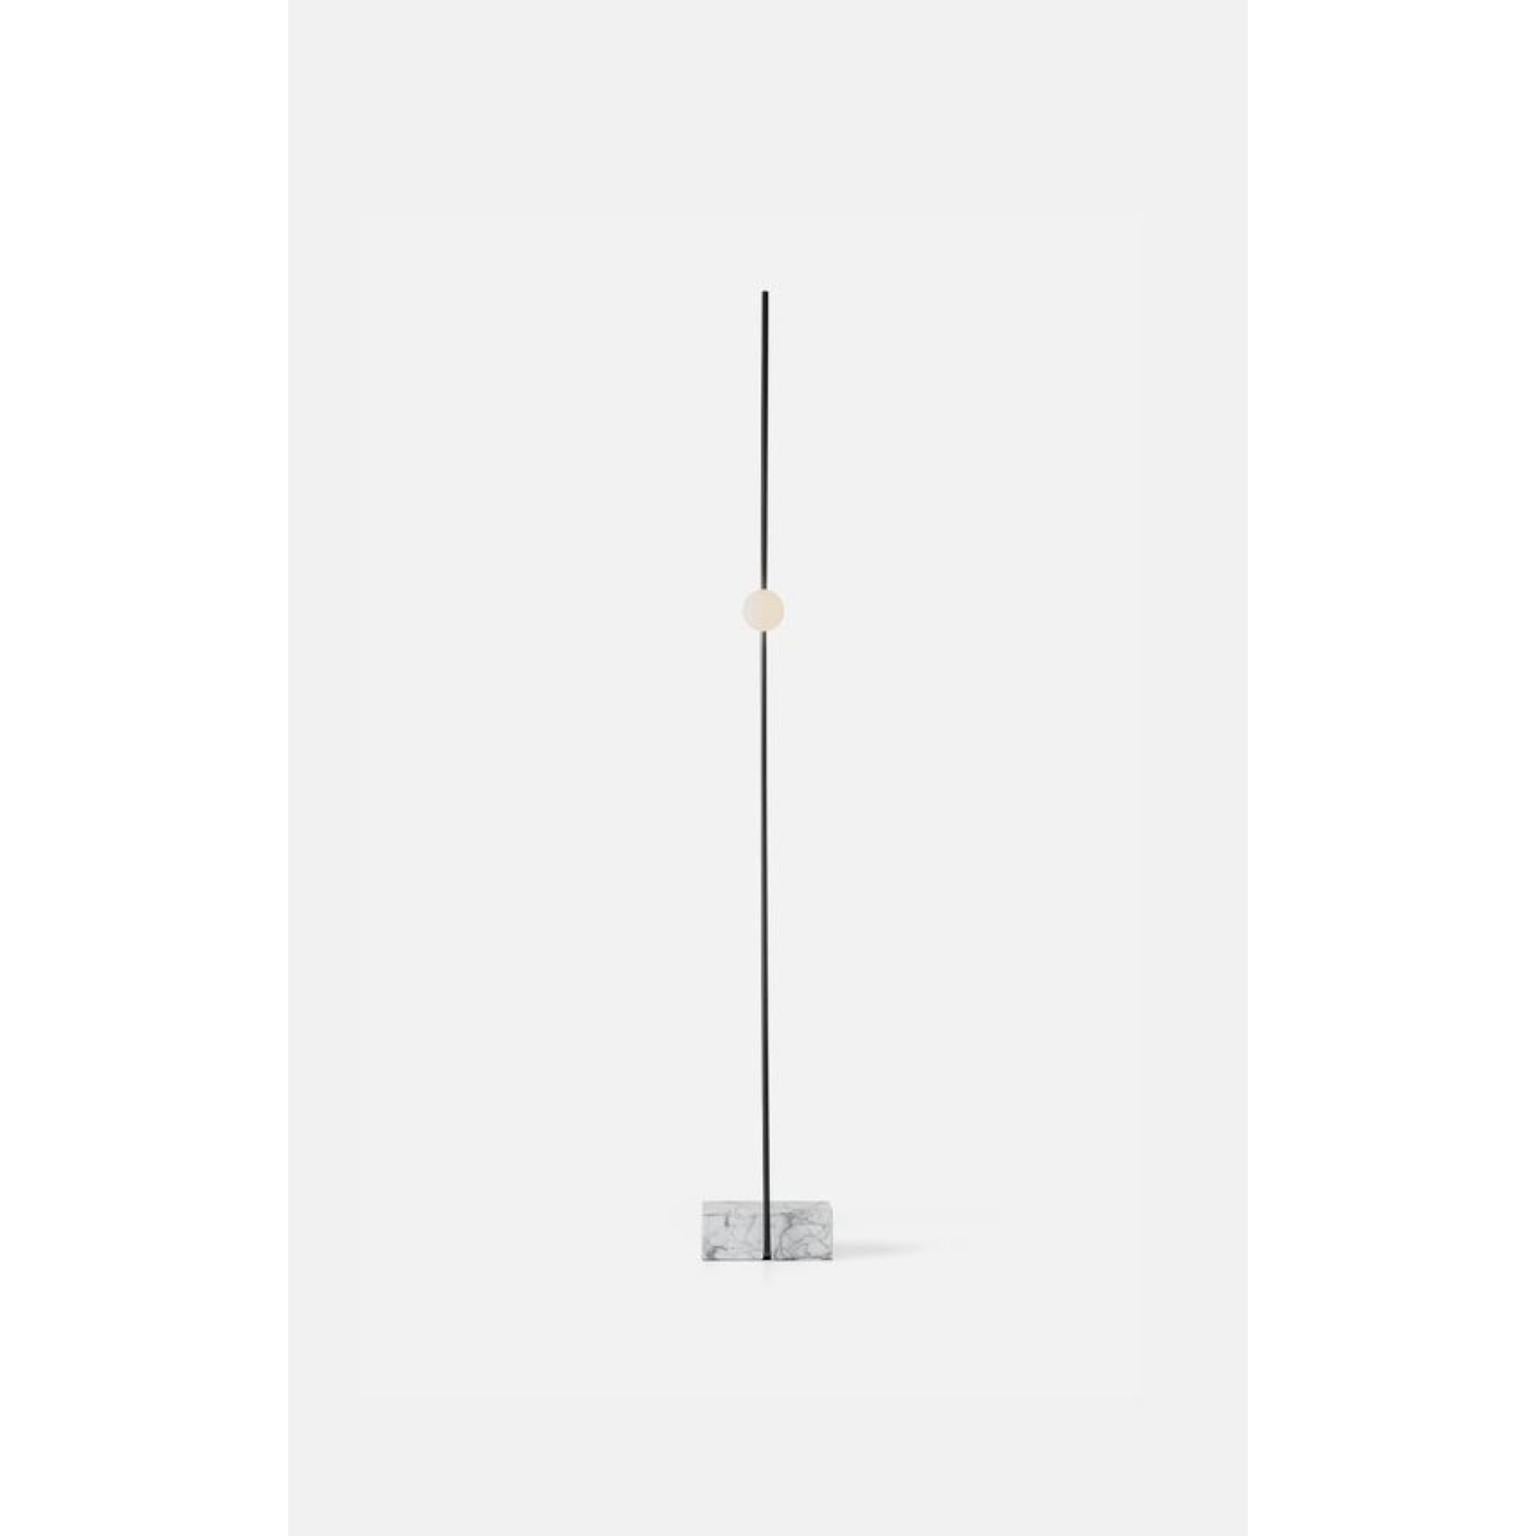 Lampadaire Adobe noir de WENTZ
Dimensions : D 32 x L 24 x H 180 cm
MATERIAL : Acier, marbre, verre soufflé.
Également disponible en différentes couleurs : Noir + Marbre de Carrare, Blanc + Marbre de Carrare, Sable + Marbre Bege Bahia.

Poids : 8,6kg